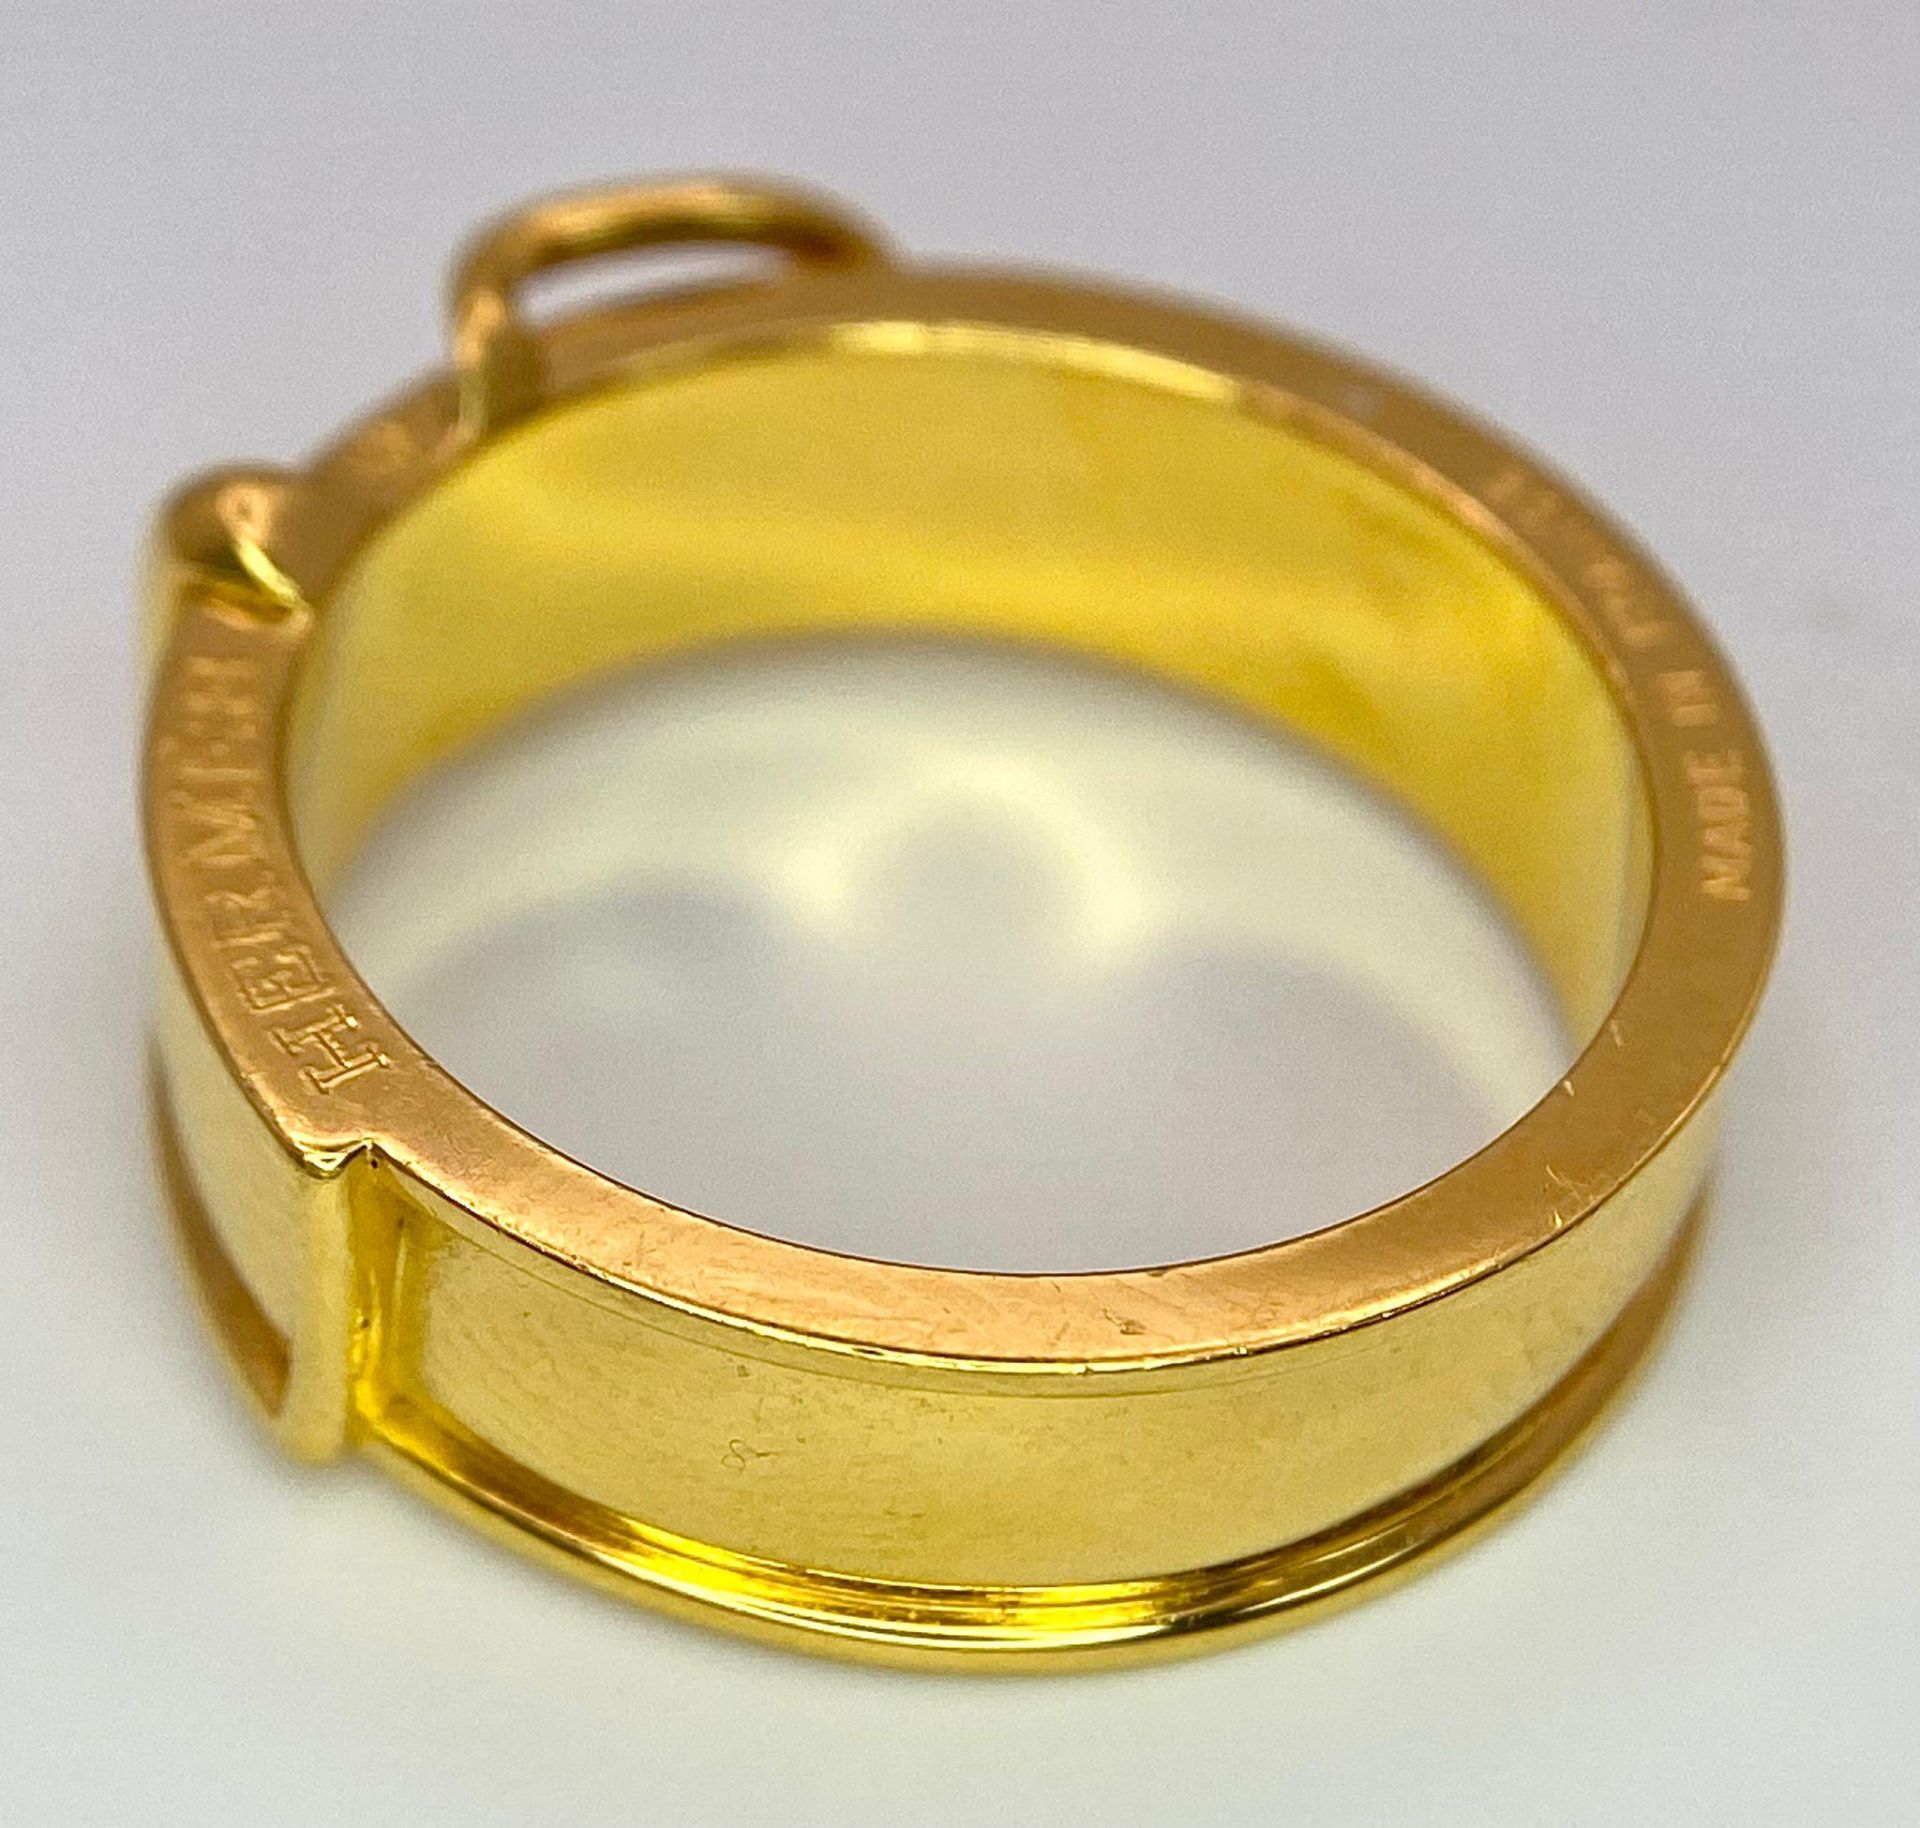 A Gold Plated Hermes Designer Belt Buckle Ring. Size S. - Image 8 of 8